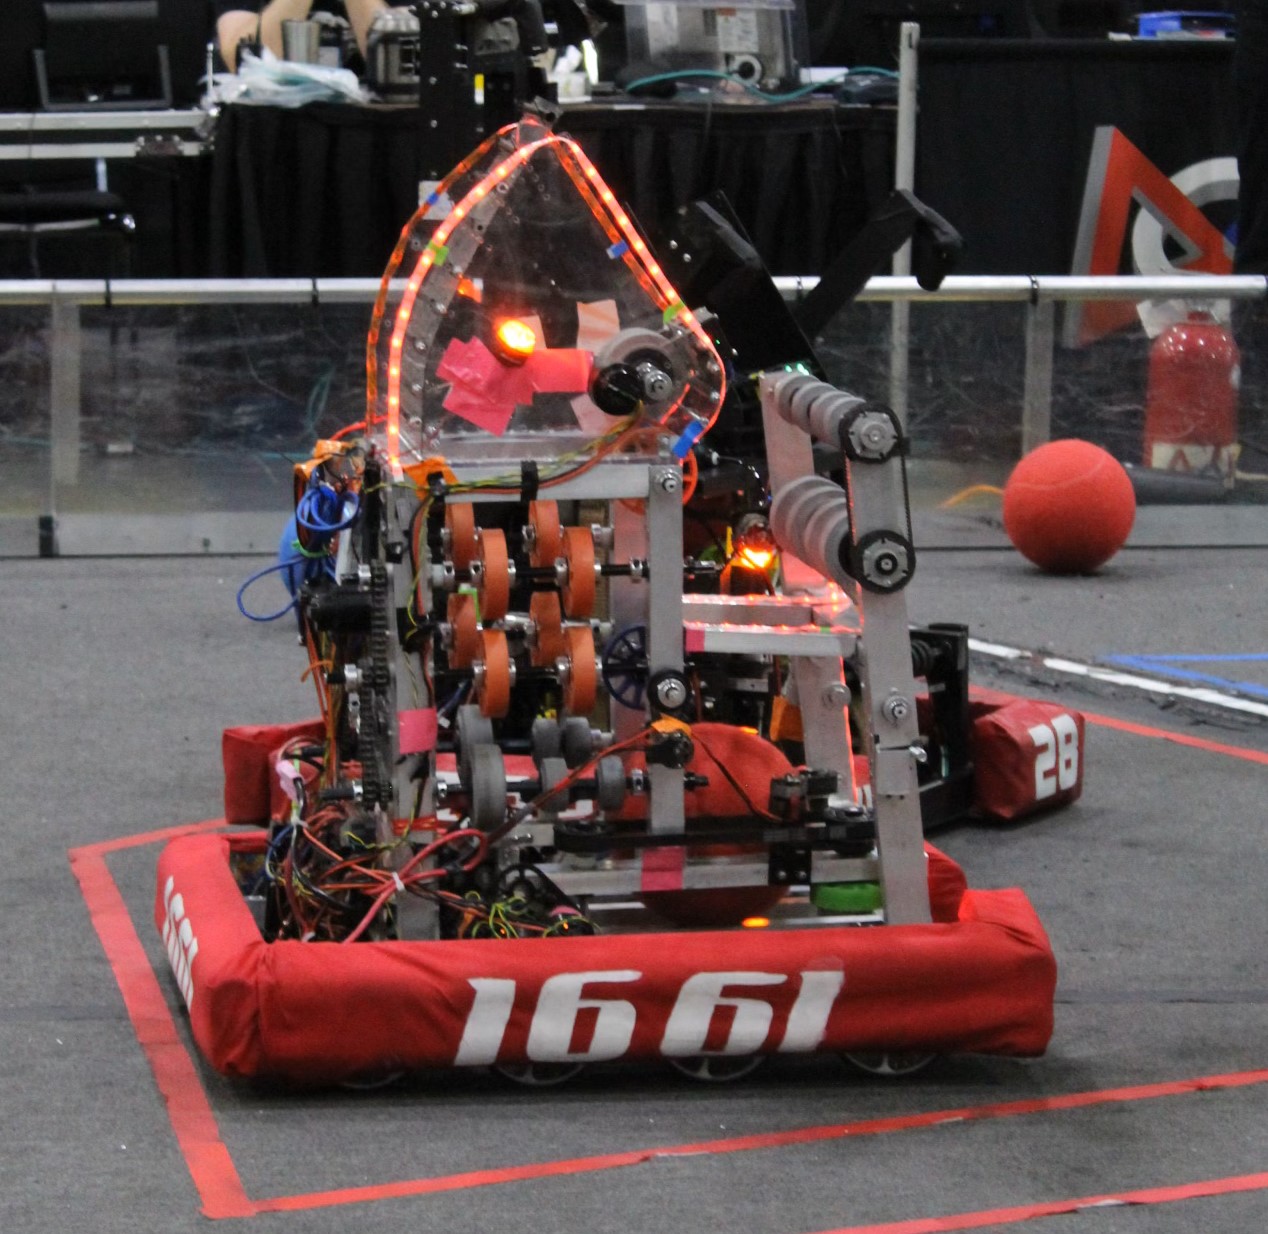 2022 robot, Eve, intaking a ball